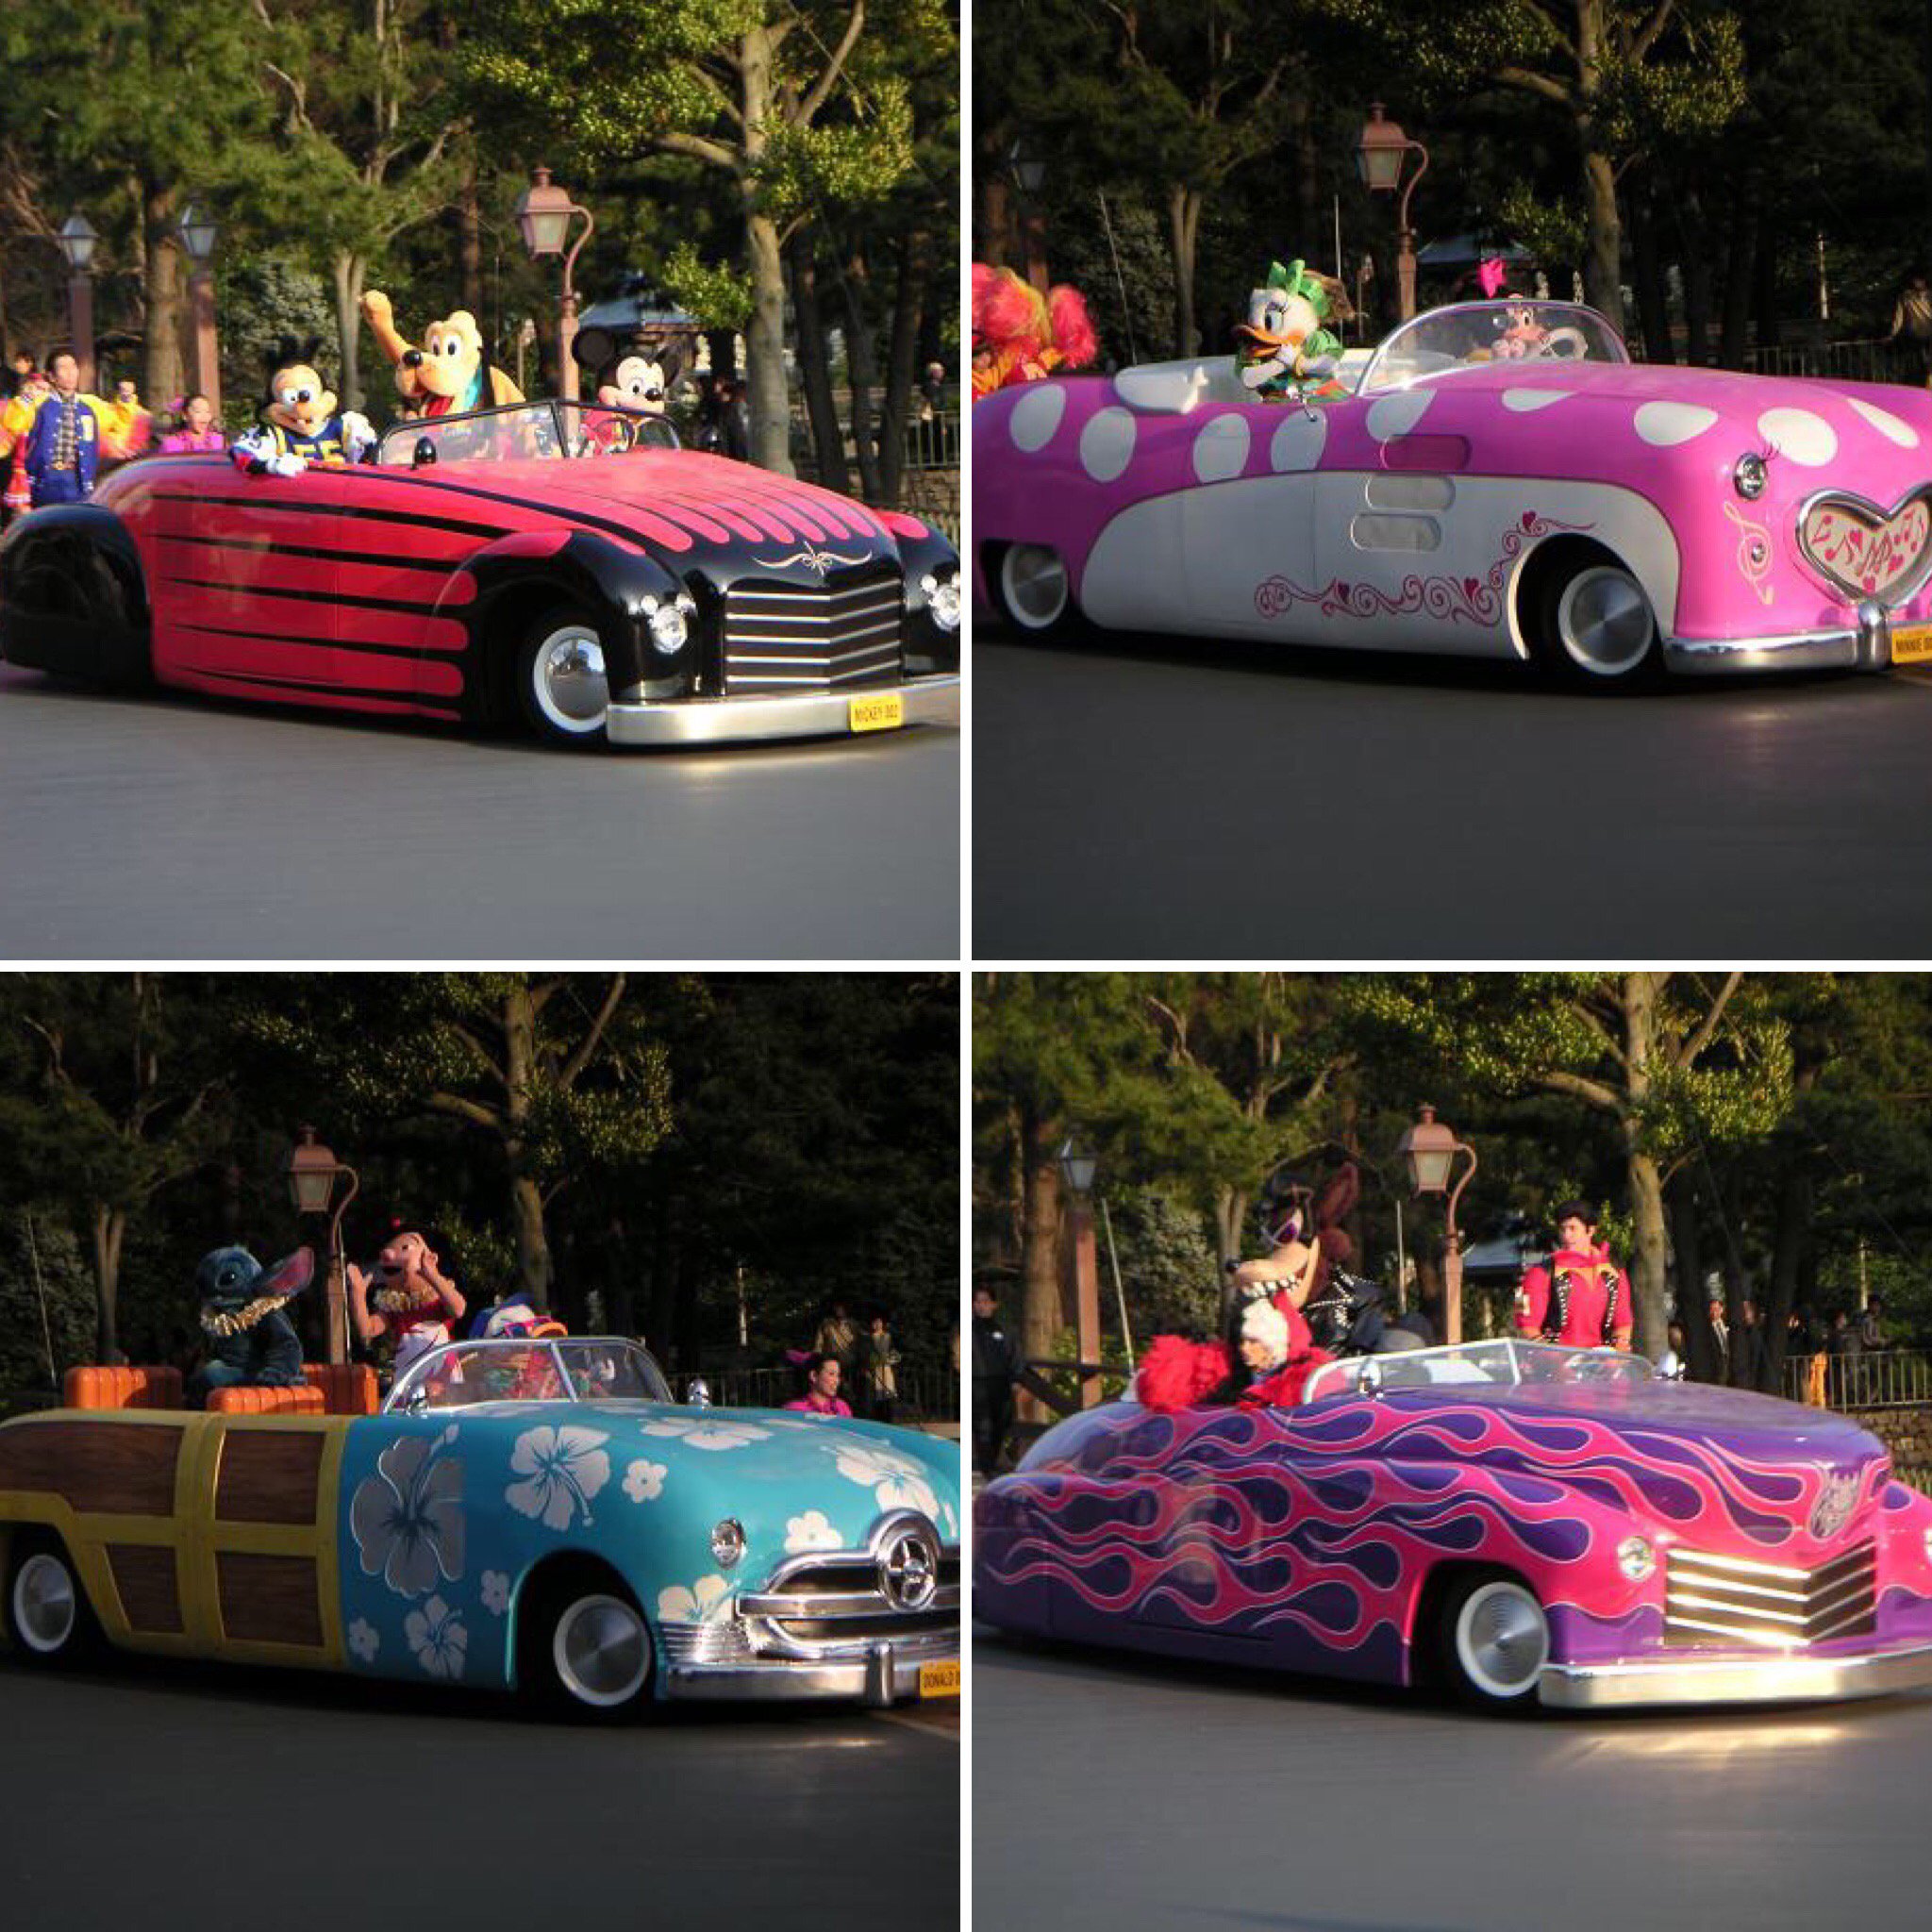 Surotaさんはライブに行きたい Tdrヒストリー 05年のイベント ロック アラウンド ザ マウス のショーで登場したカスタムカー どの車もローダウン フレアパターン塗装などのカスタムカー揃い キャラ達が愛車をドライブして城前に登場するの